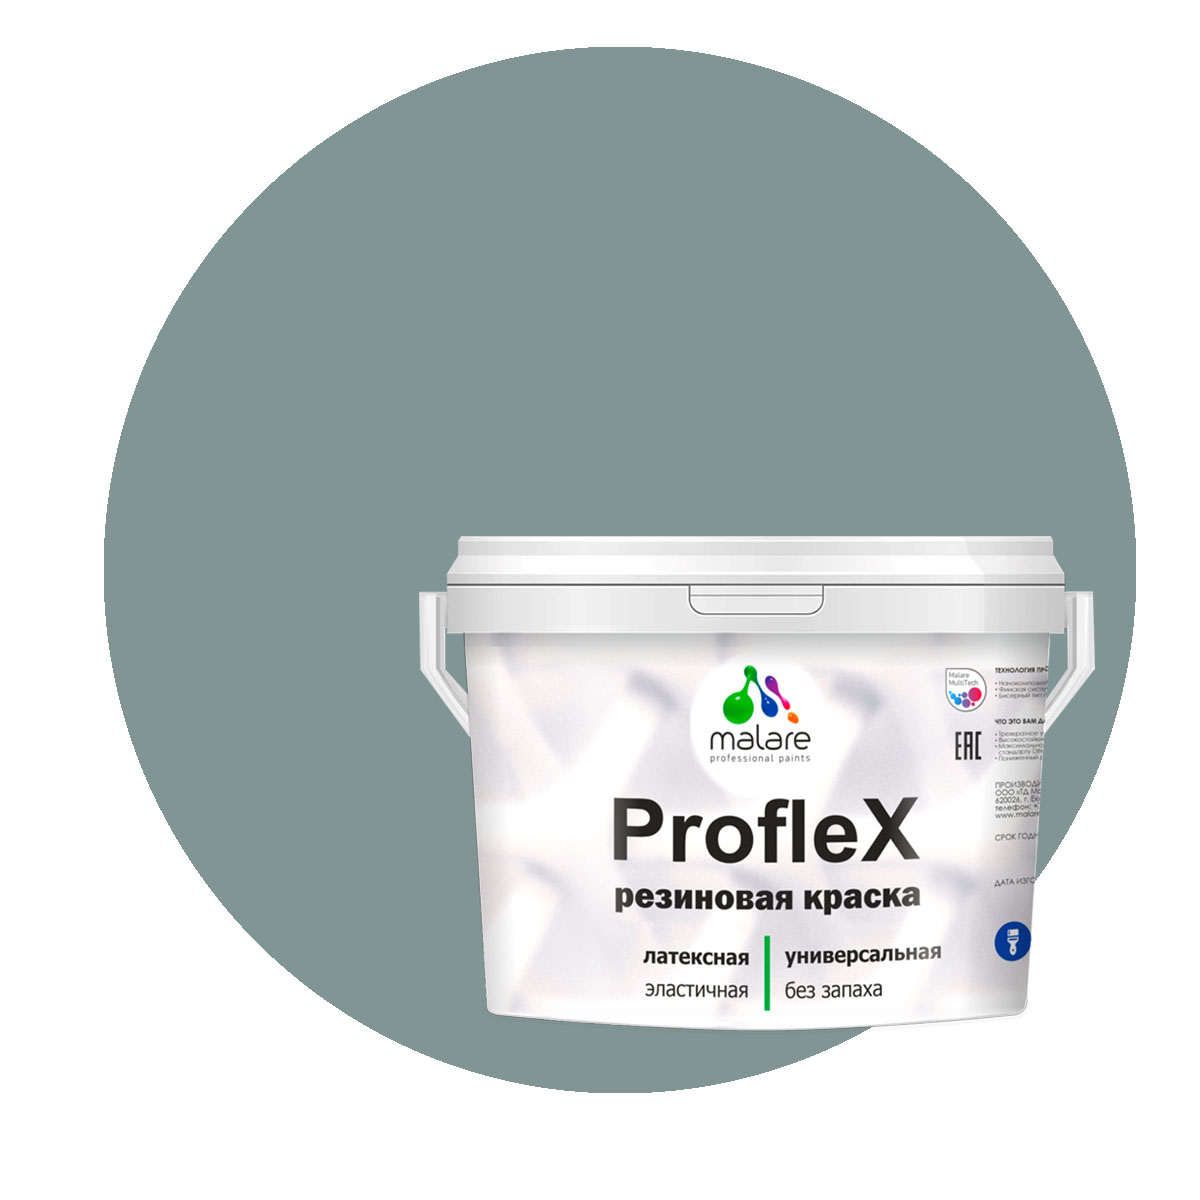 Краска Malare ProfleX для фасадов, интерьера, мебели, агатовый серый, 2 кг. щелочной очиститель фасадов зданий plex